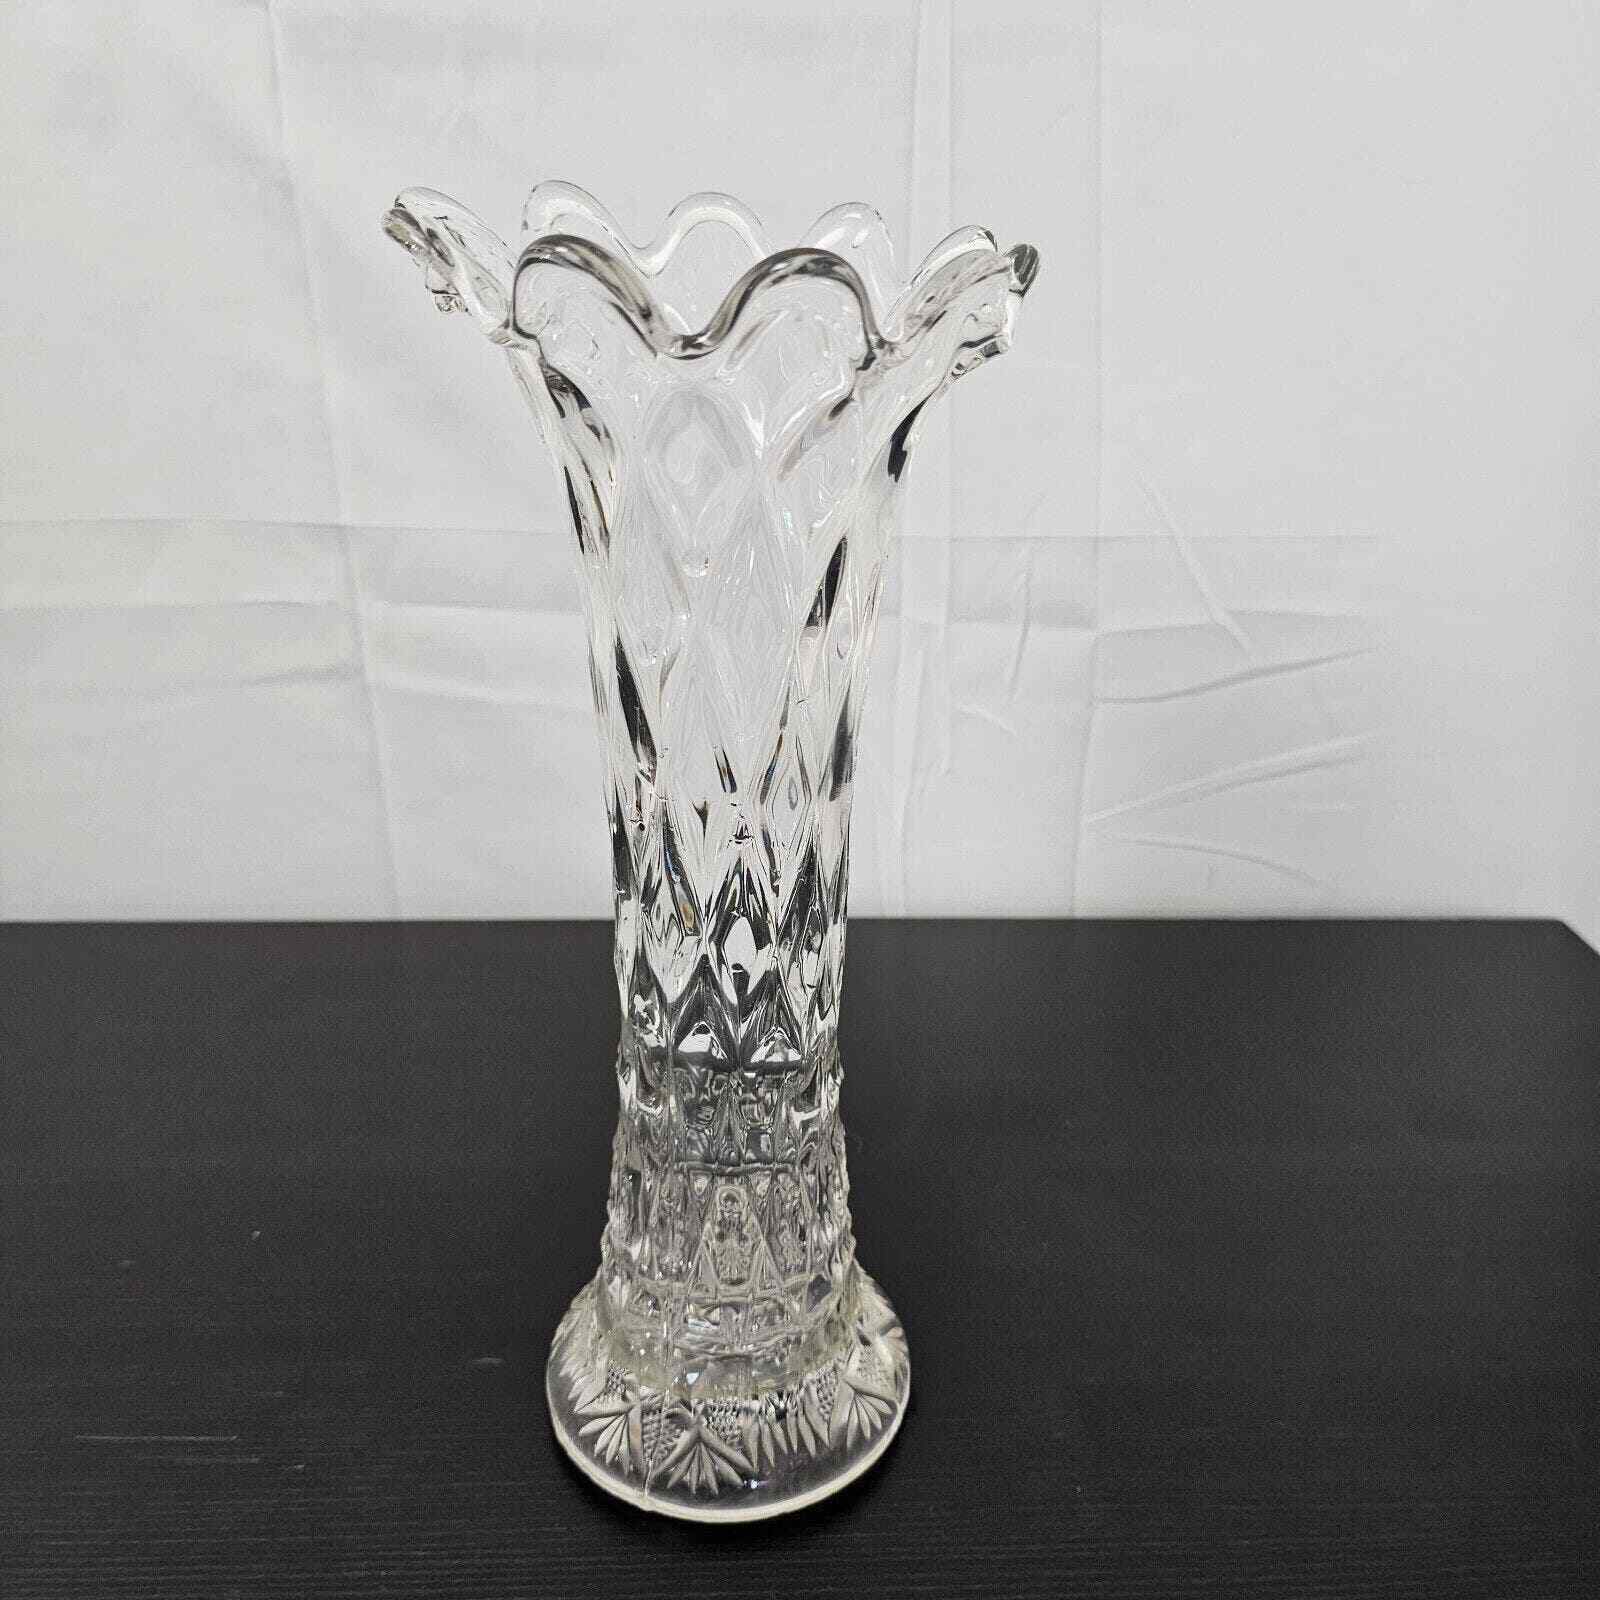 Vintage Imperial Crystal Scalloped Edge Vase Elegant Glass Decor Etched Design